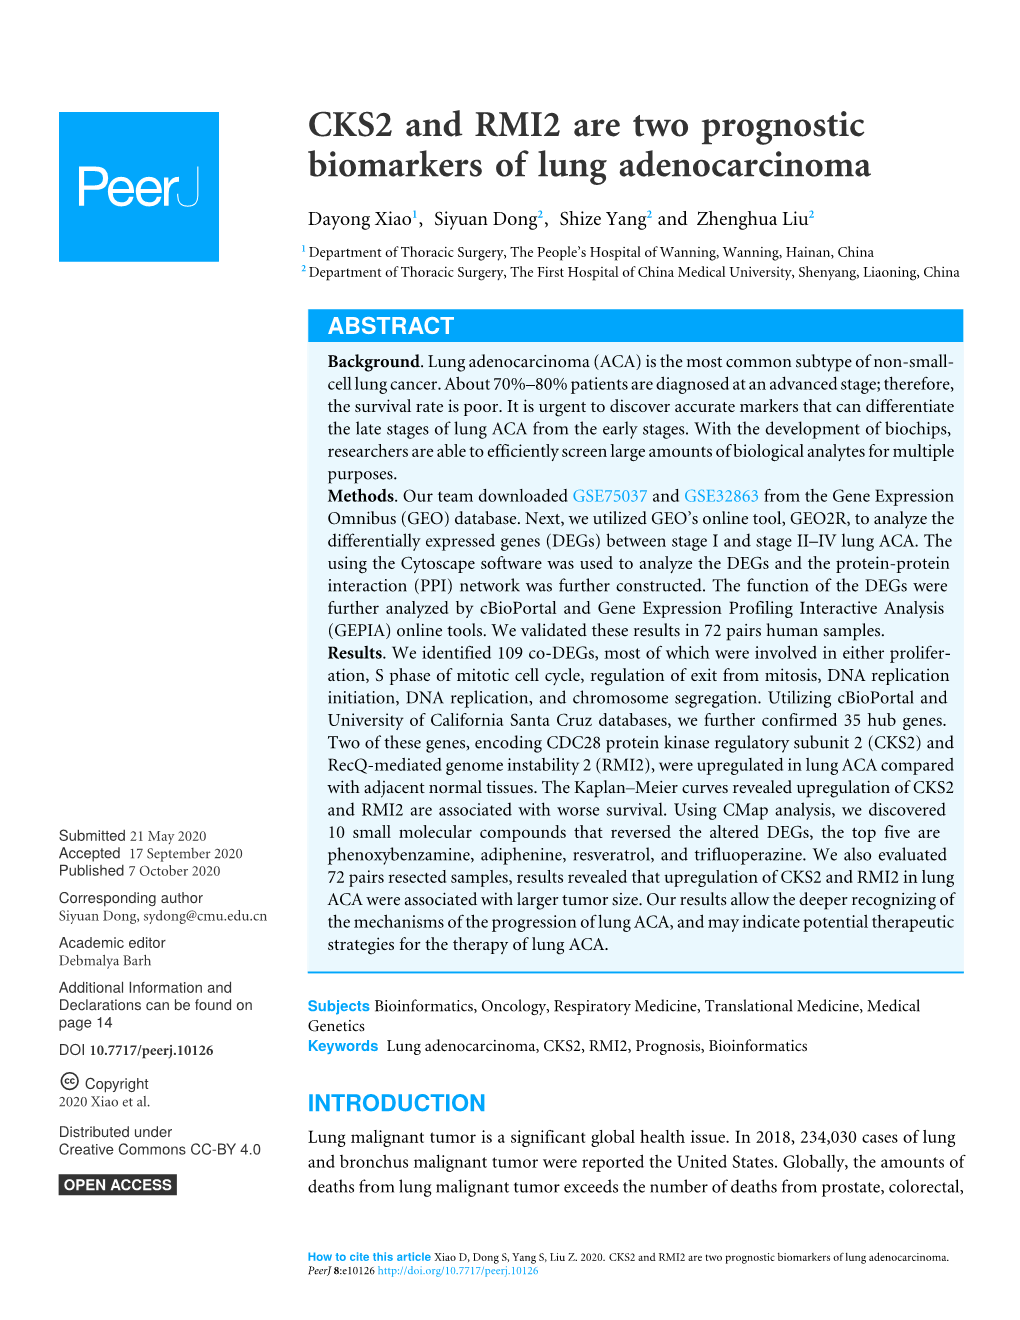 CKS2 and RMI2 Are Two Prognostic Biomarkers of Lung Adenocarcinoma